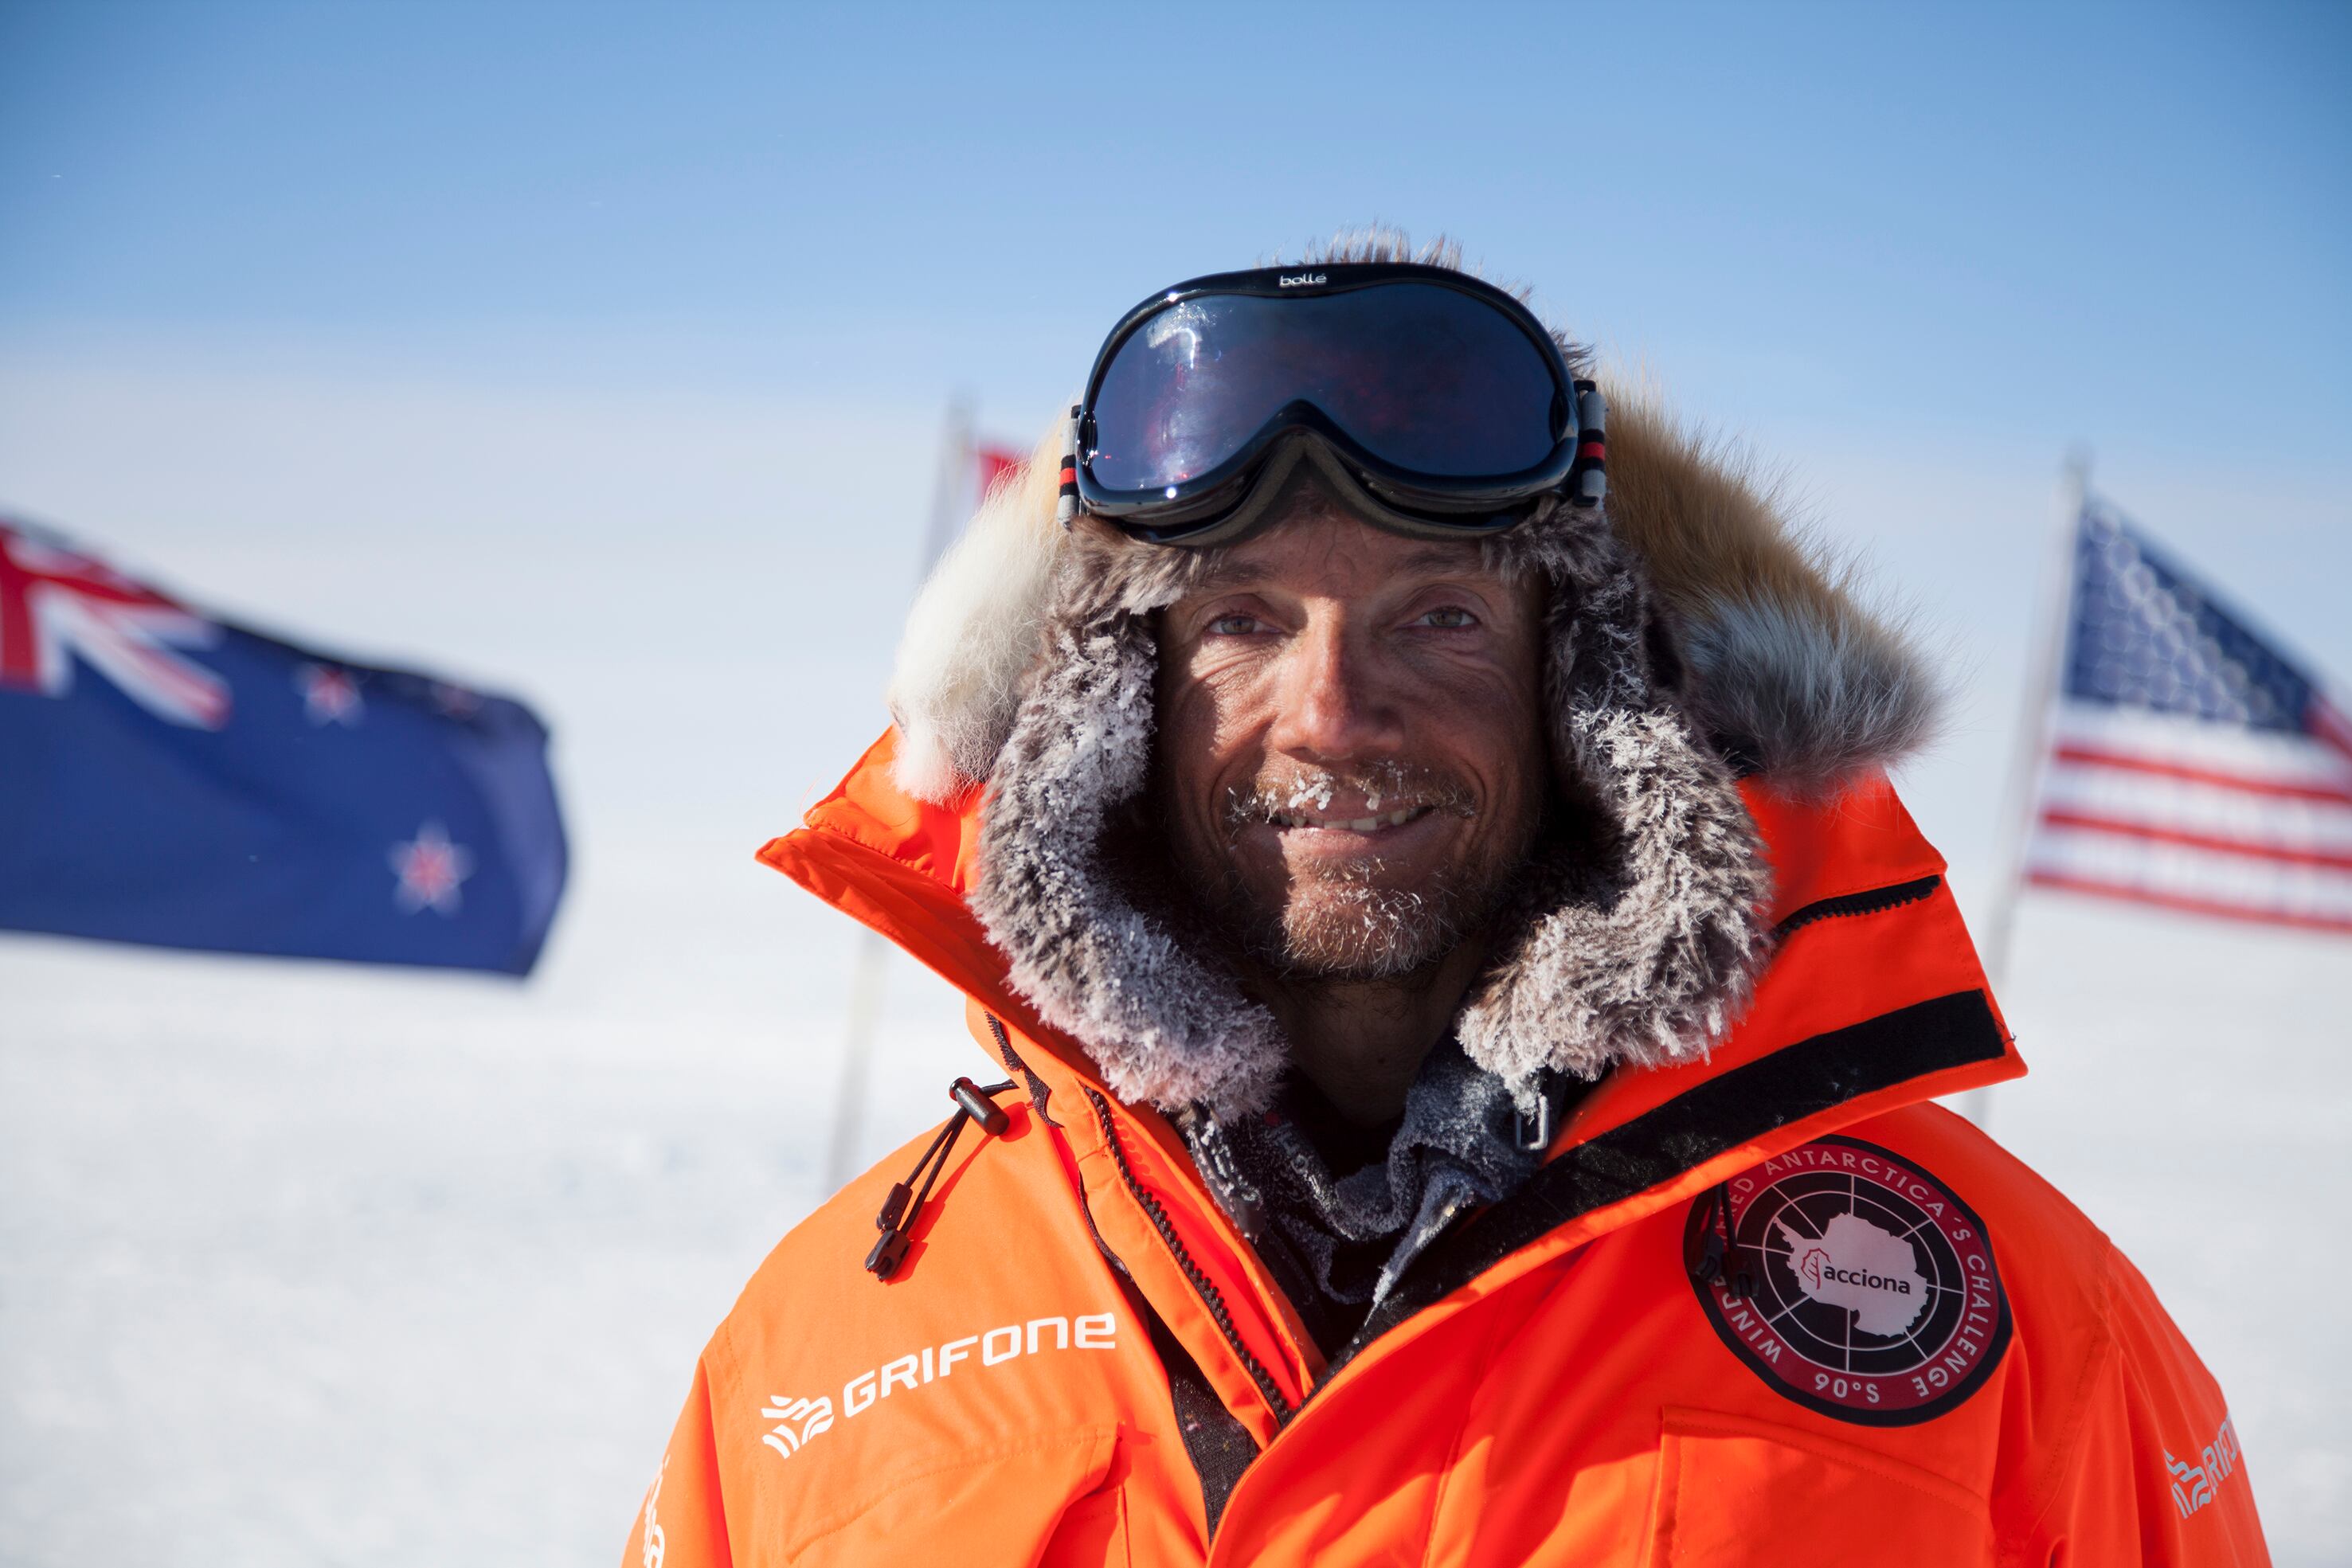 El biólogo navarro Ignacio Oficialdegui, en el ceremonial que señala el Polo Sur geográfico en la Antártida, durante su expedición de 2011-2012, en una imagen cedida.